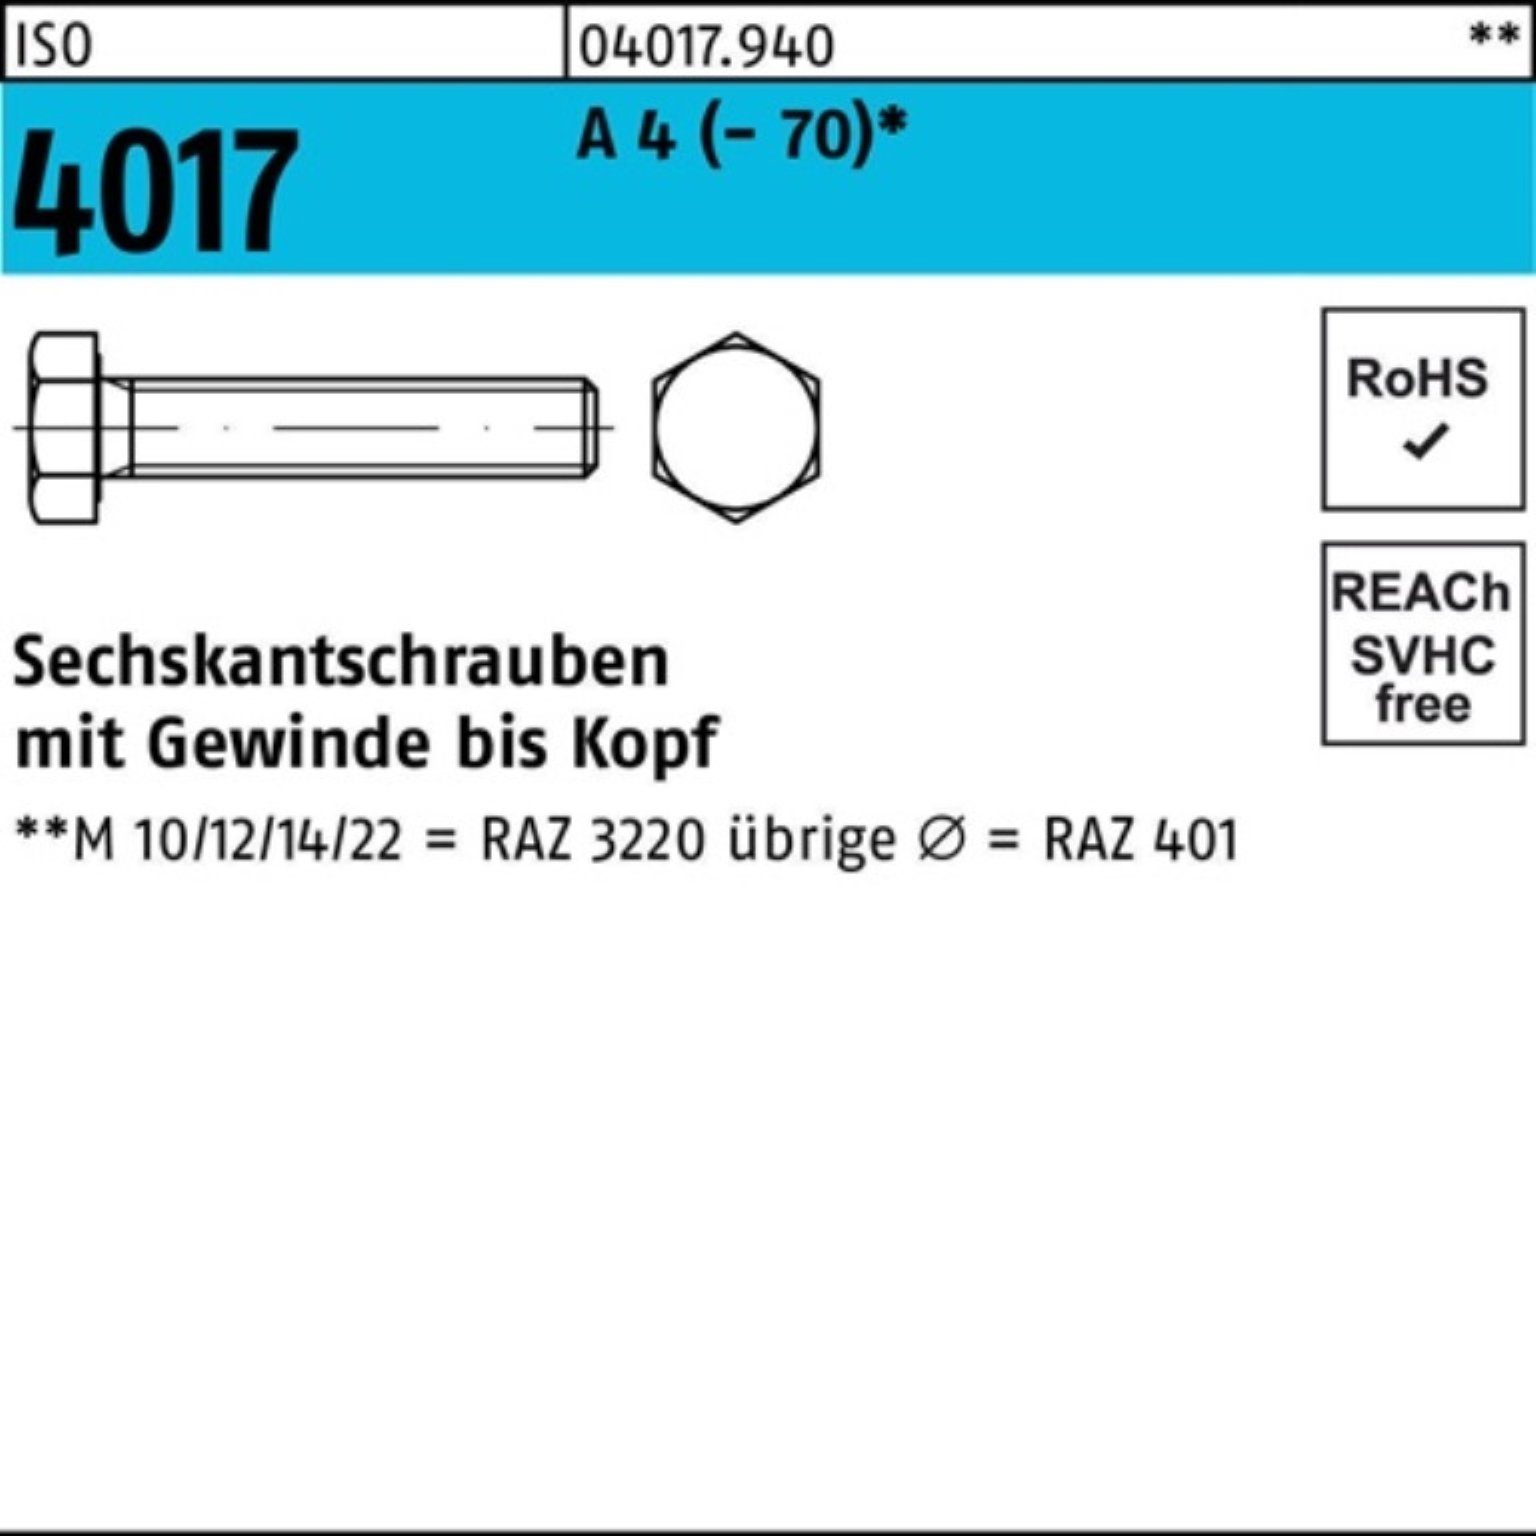 Bufab Sechskantschraube 100er Pack Sechskantschraube ISO 4017 VG M20x 30 A 4 (70) 25 Stück